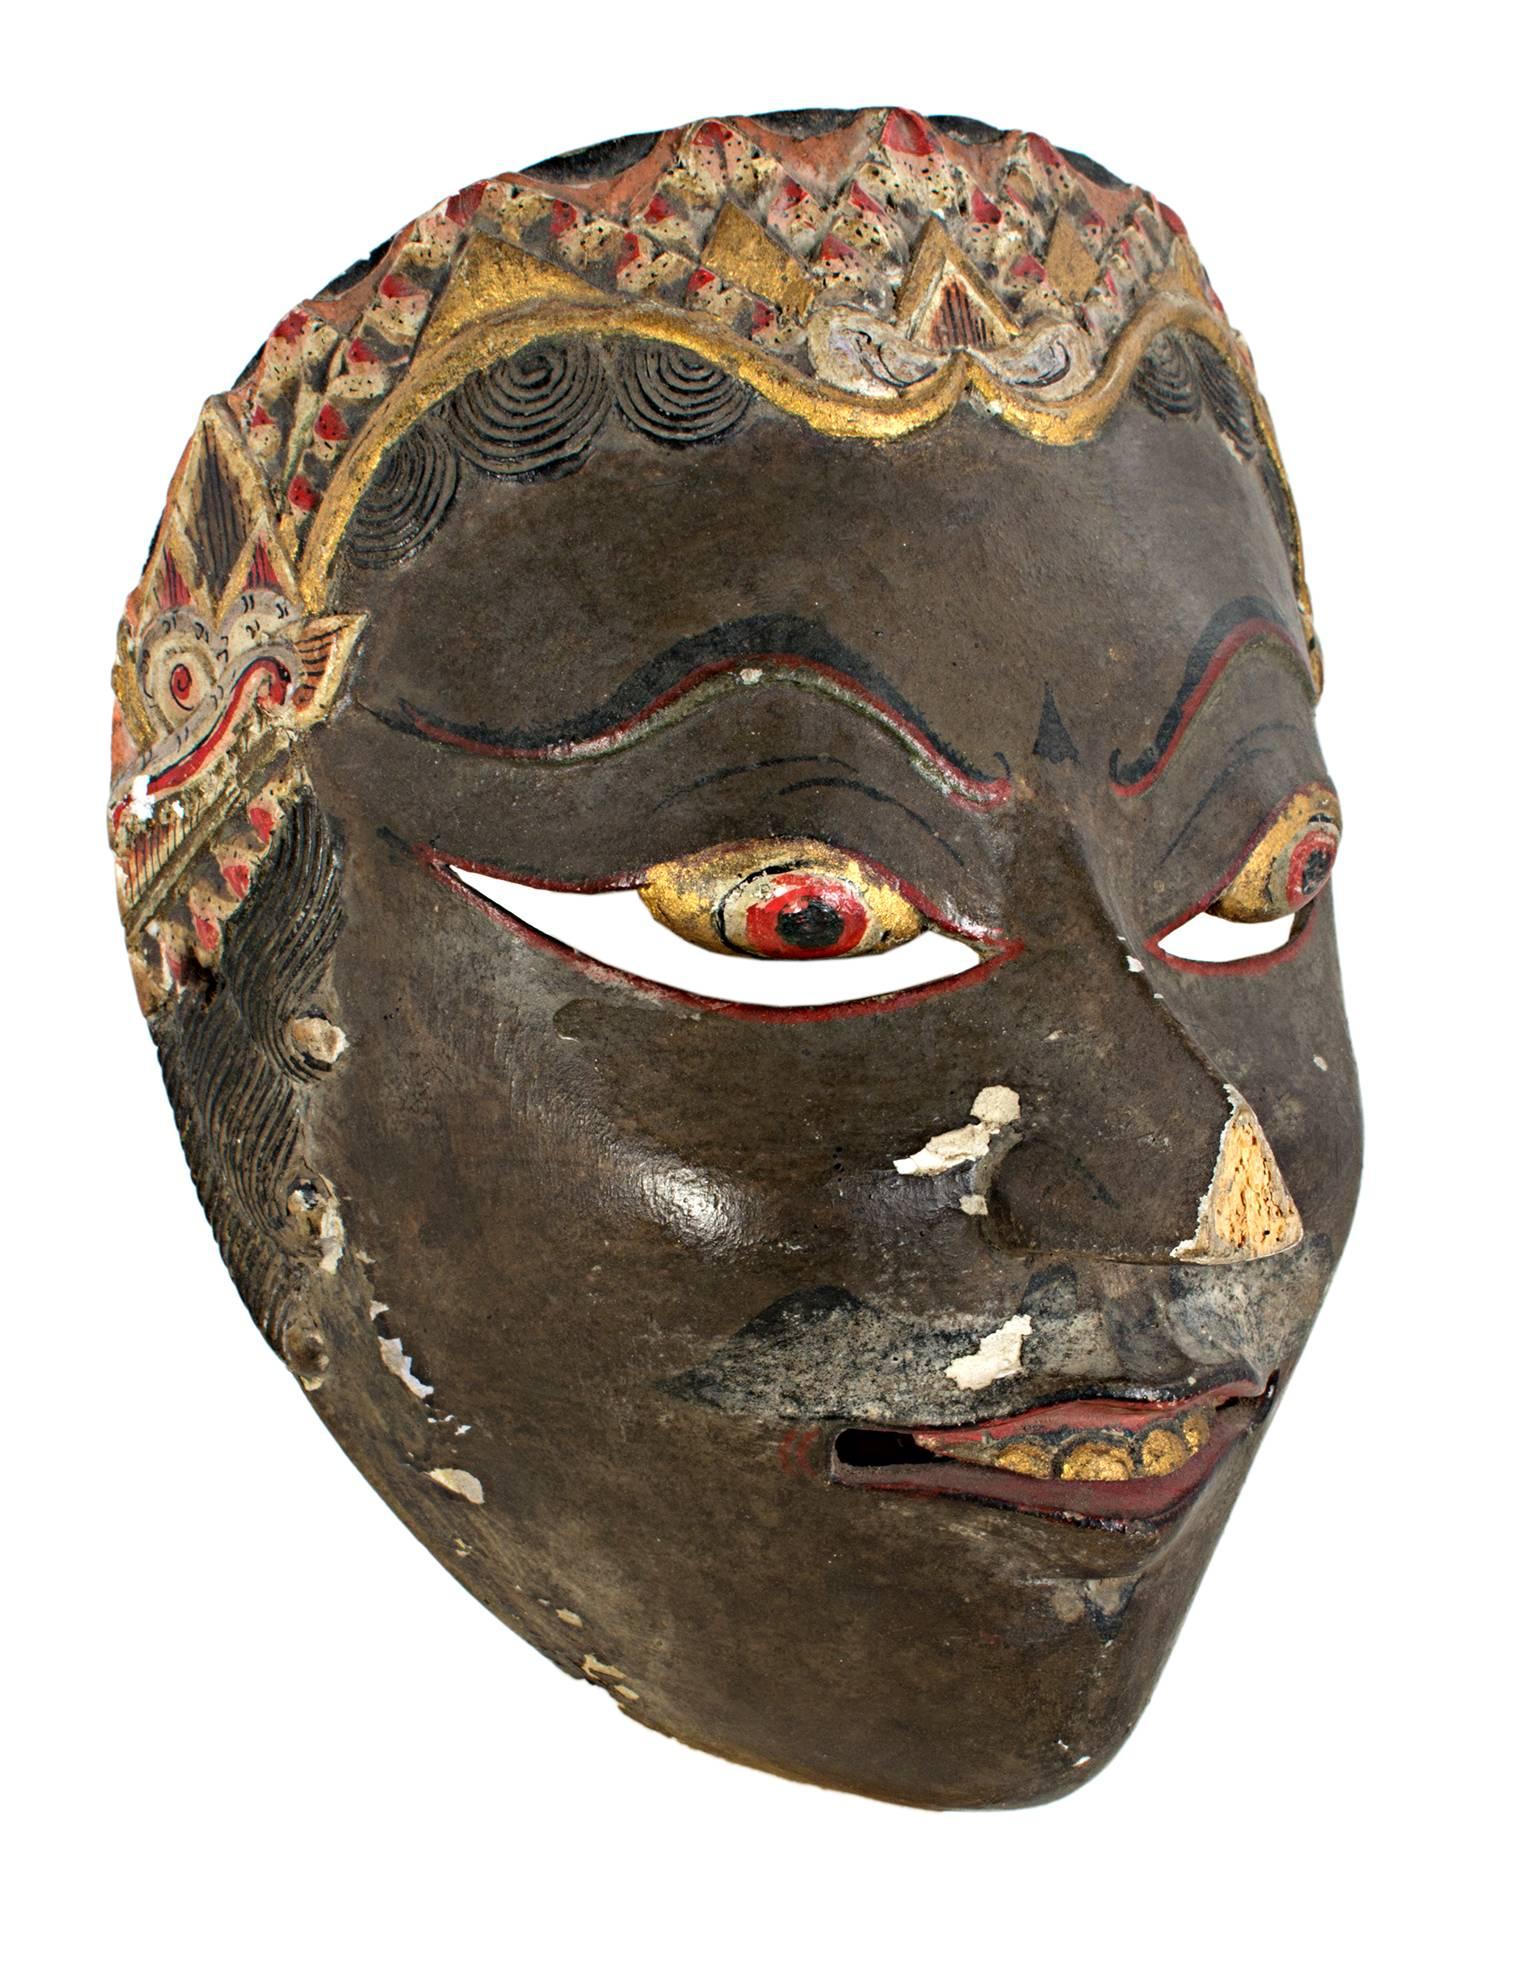 Diese Maske, die von einem unbekannten indonesischen Künstler geschaffen wurde, zeigt dunkle Sünden, goldene und rote Augen, Zähne und Haare. Es ist ungefähr 7